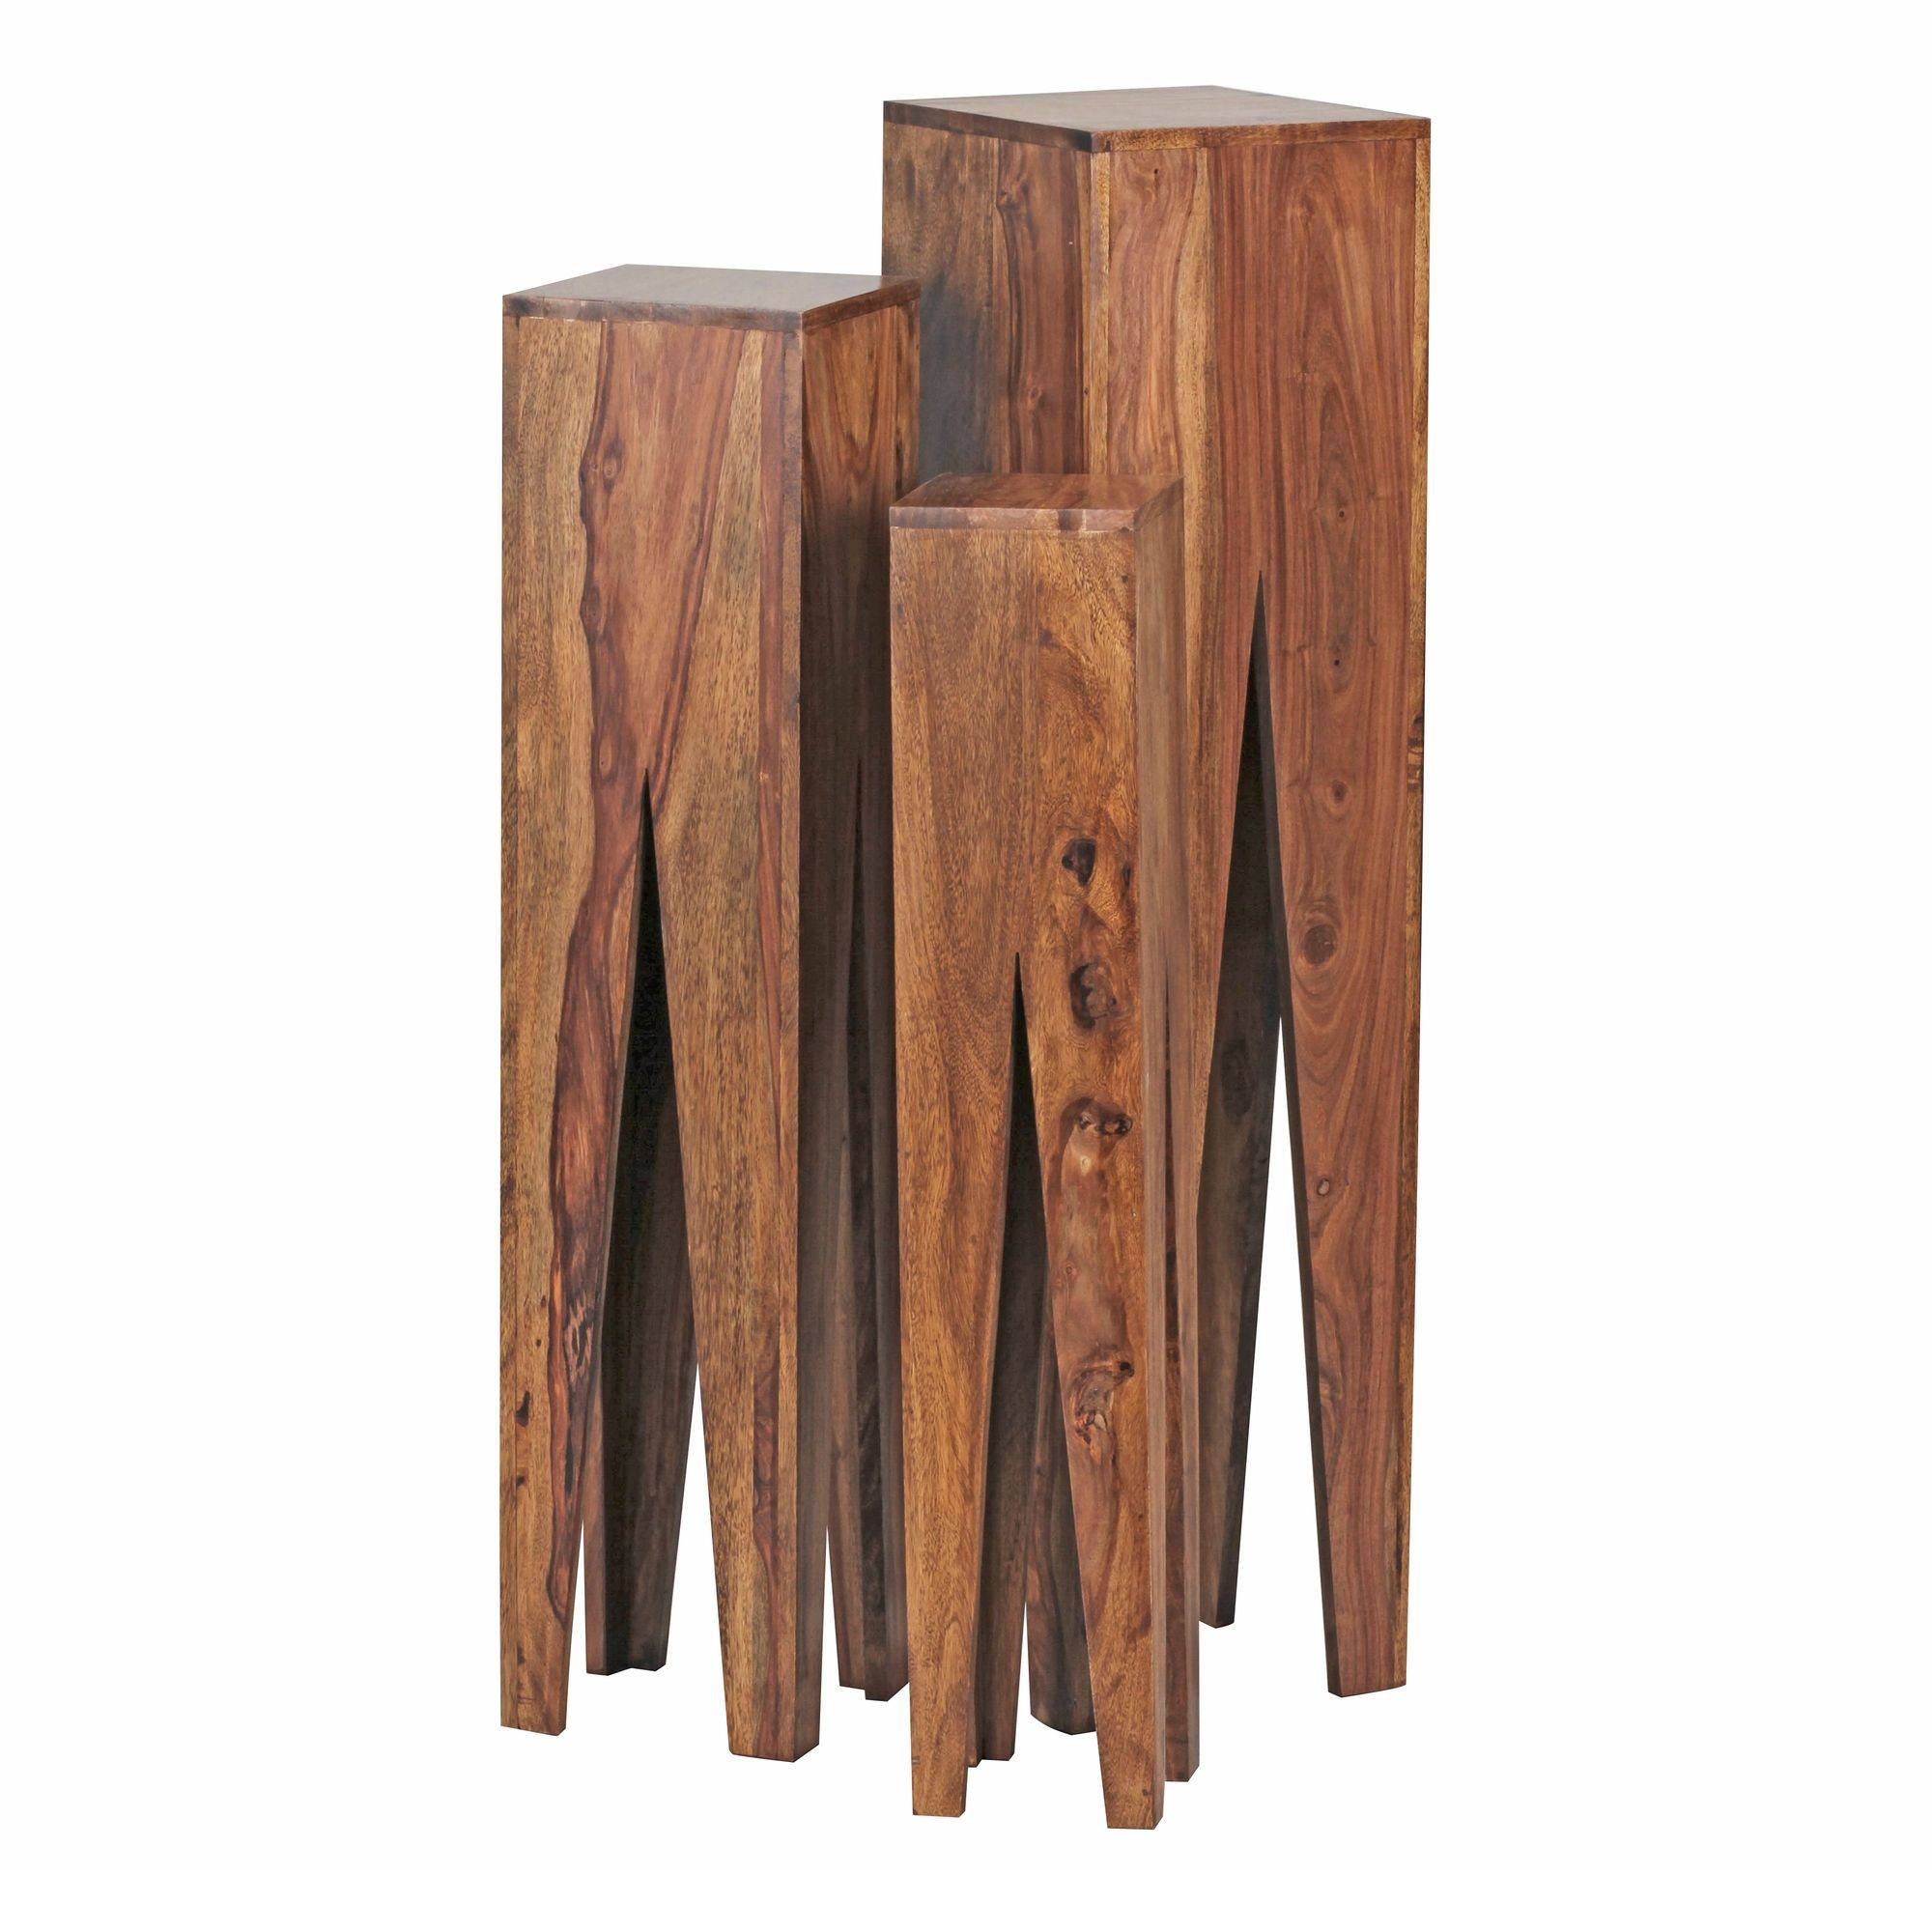 KADIMA | Braun | Ambiente DESIGN Giraffenbein-Beistelltischset: Braun Rustikales Braun Massivholz Satztisch mit